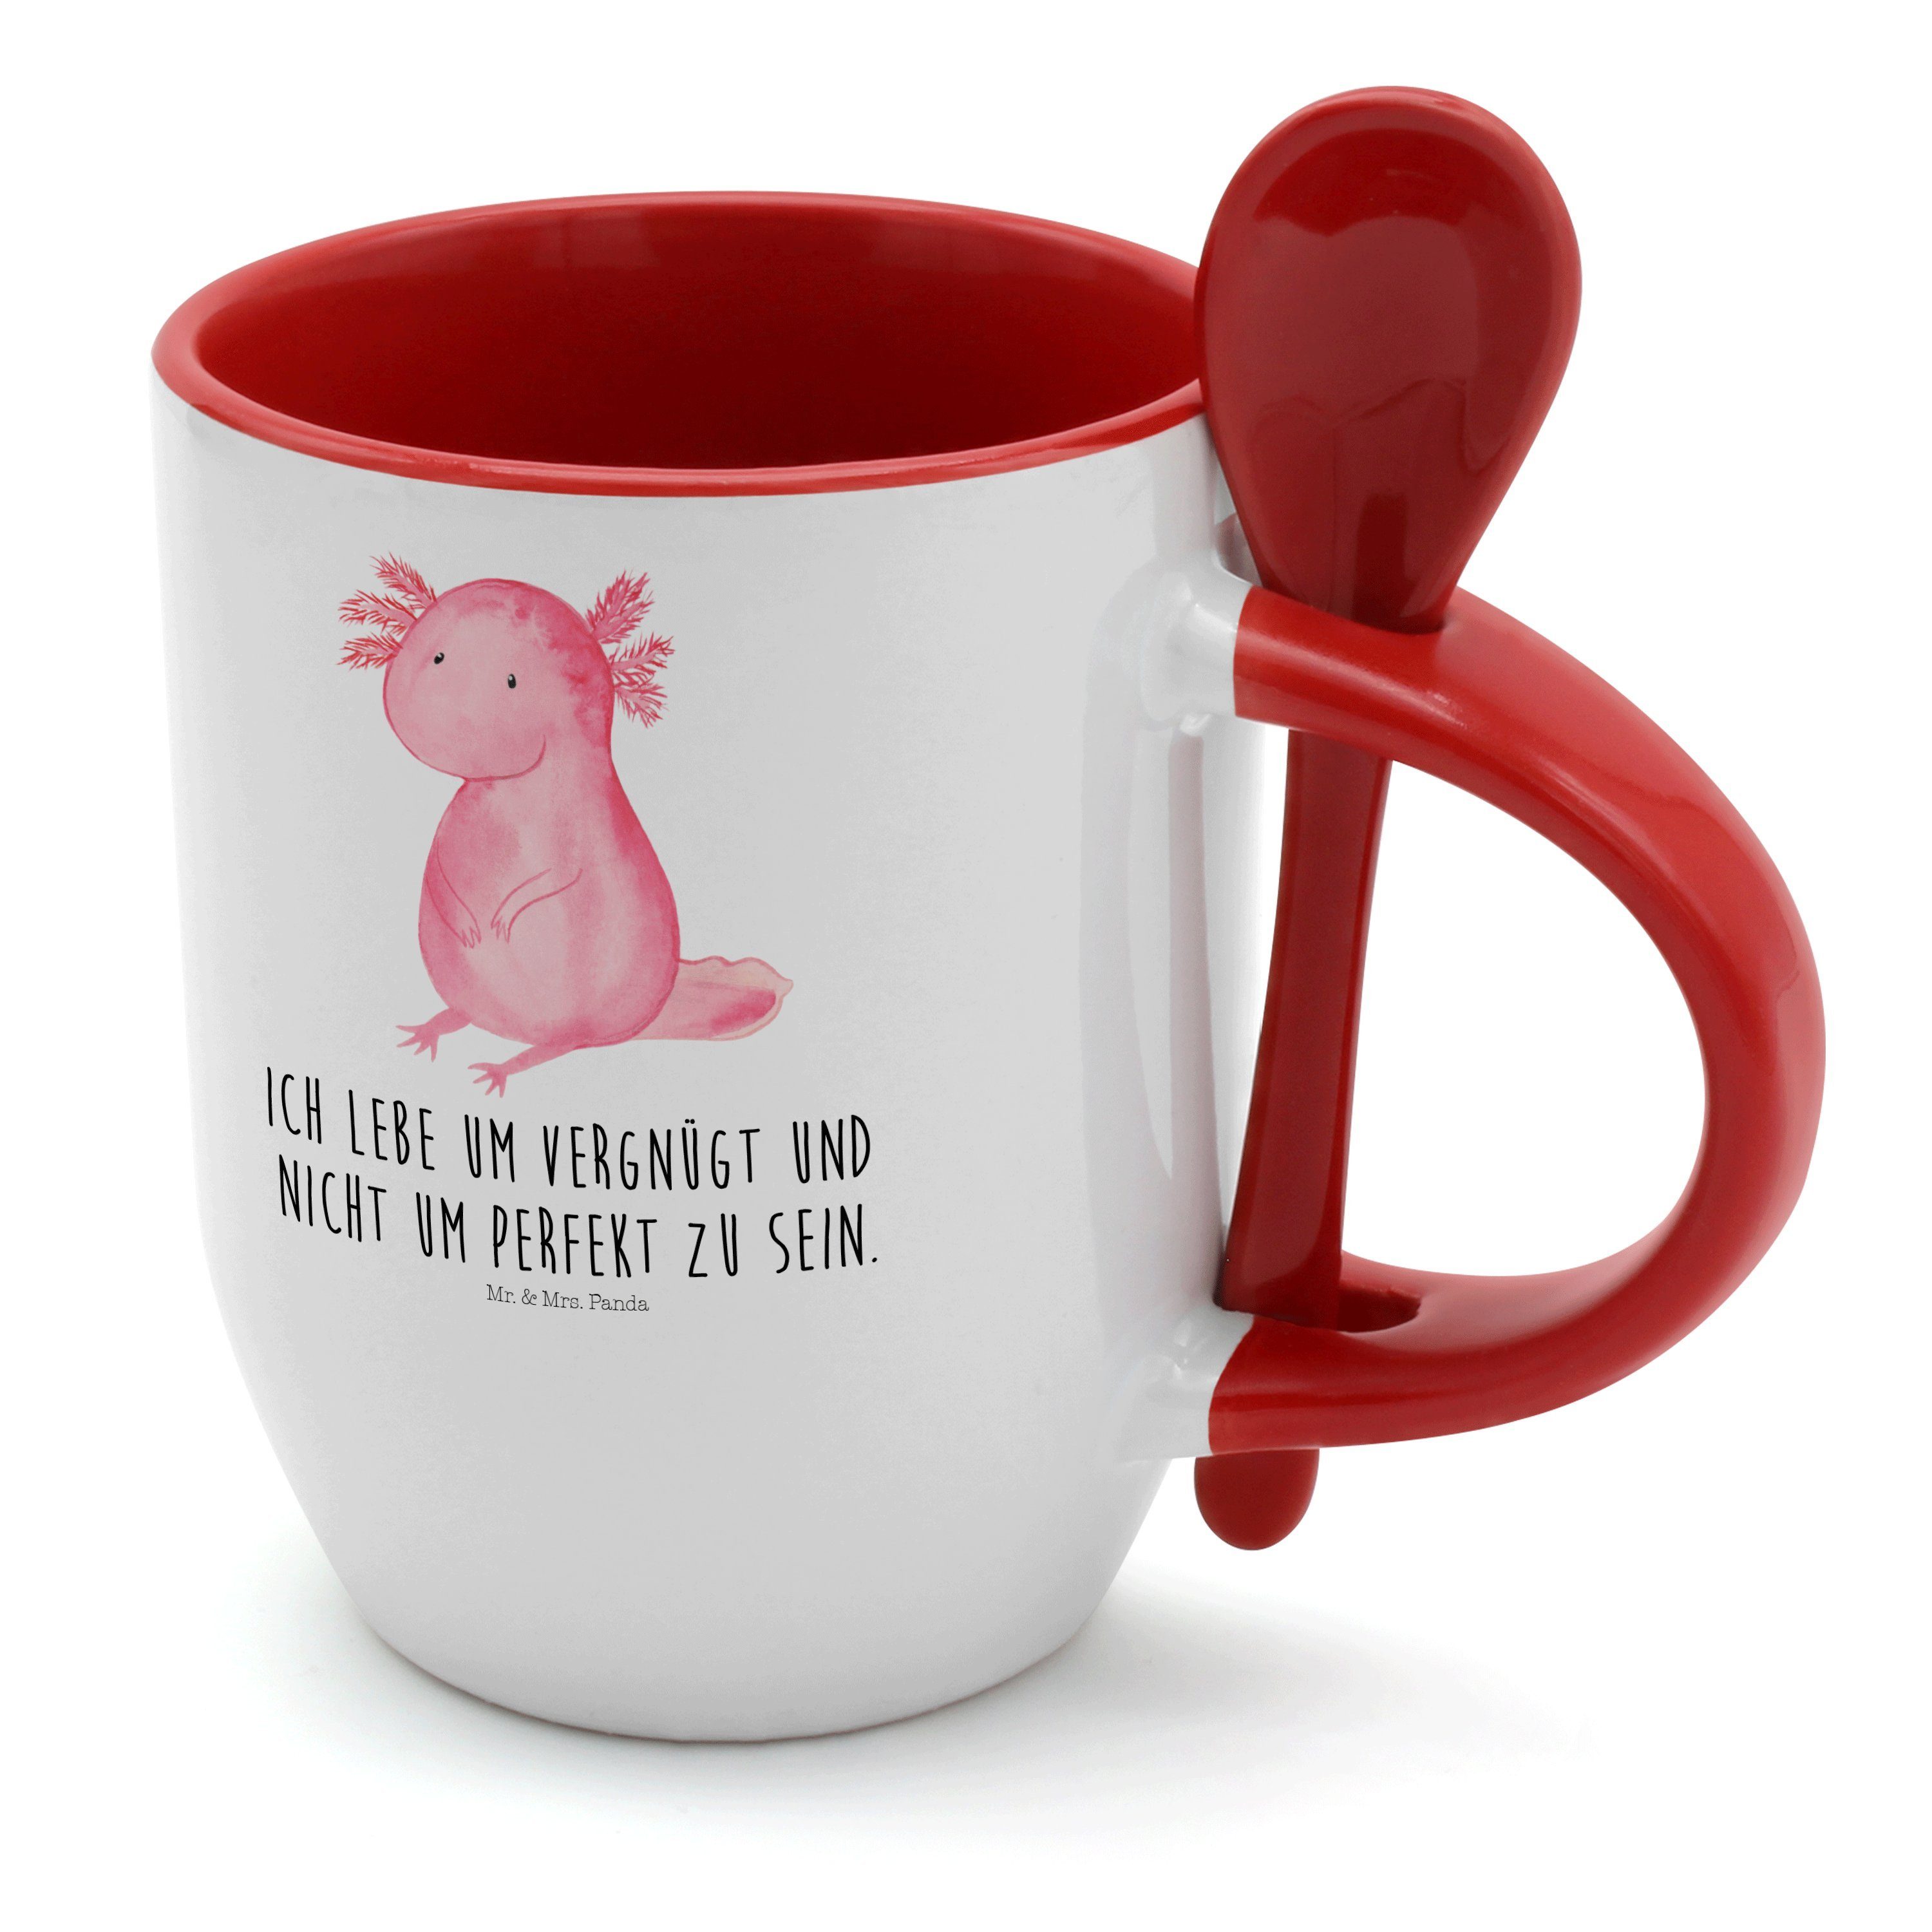 Mr. & Mrs. Panda Tasse Axolotl - Weiß - Geschenk, Tasse mit Spruch, Tasse, Molch, Kaffeebech, Keramik